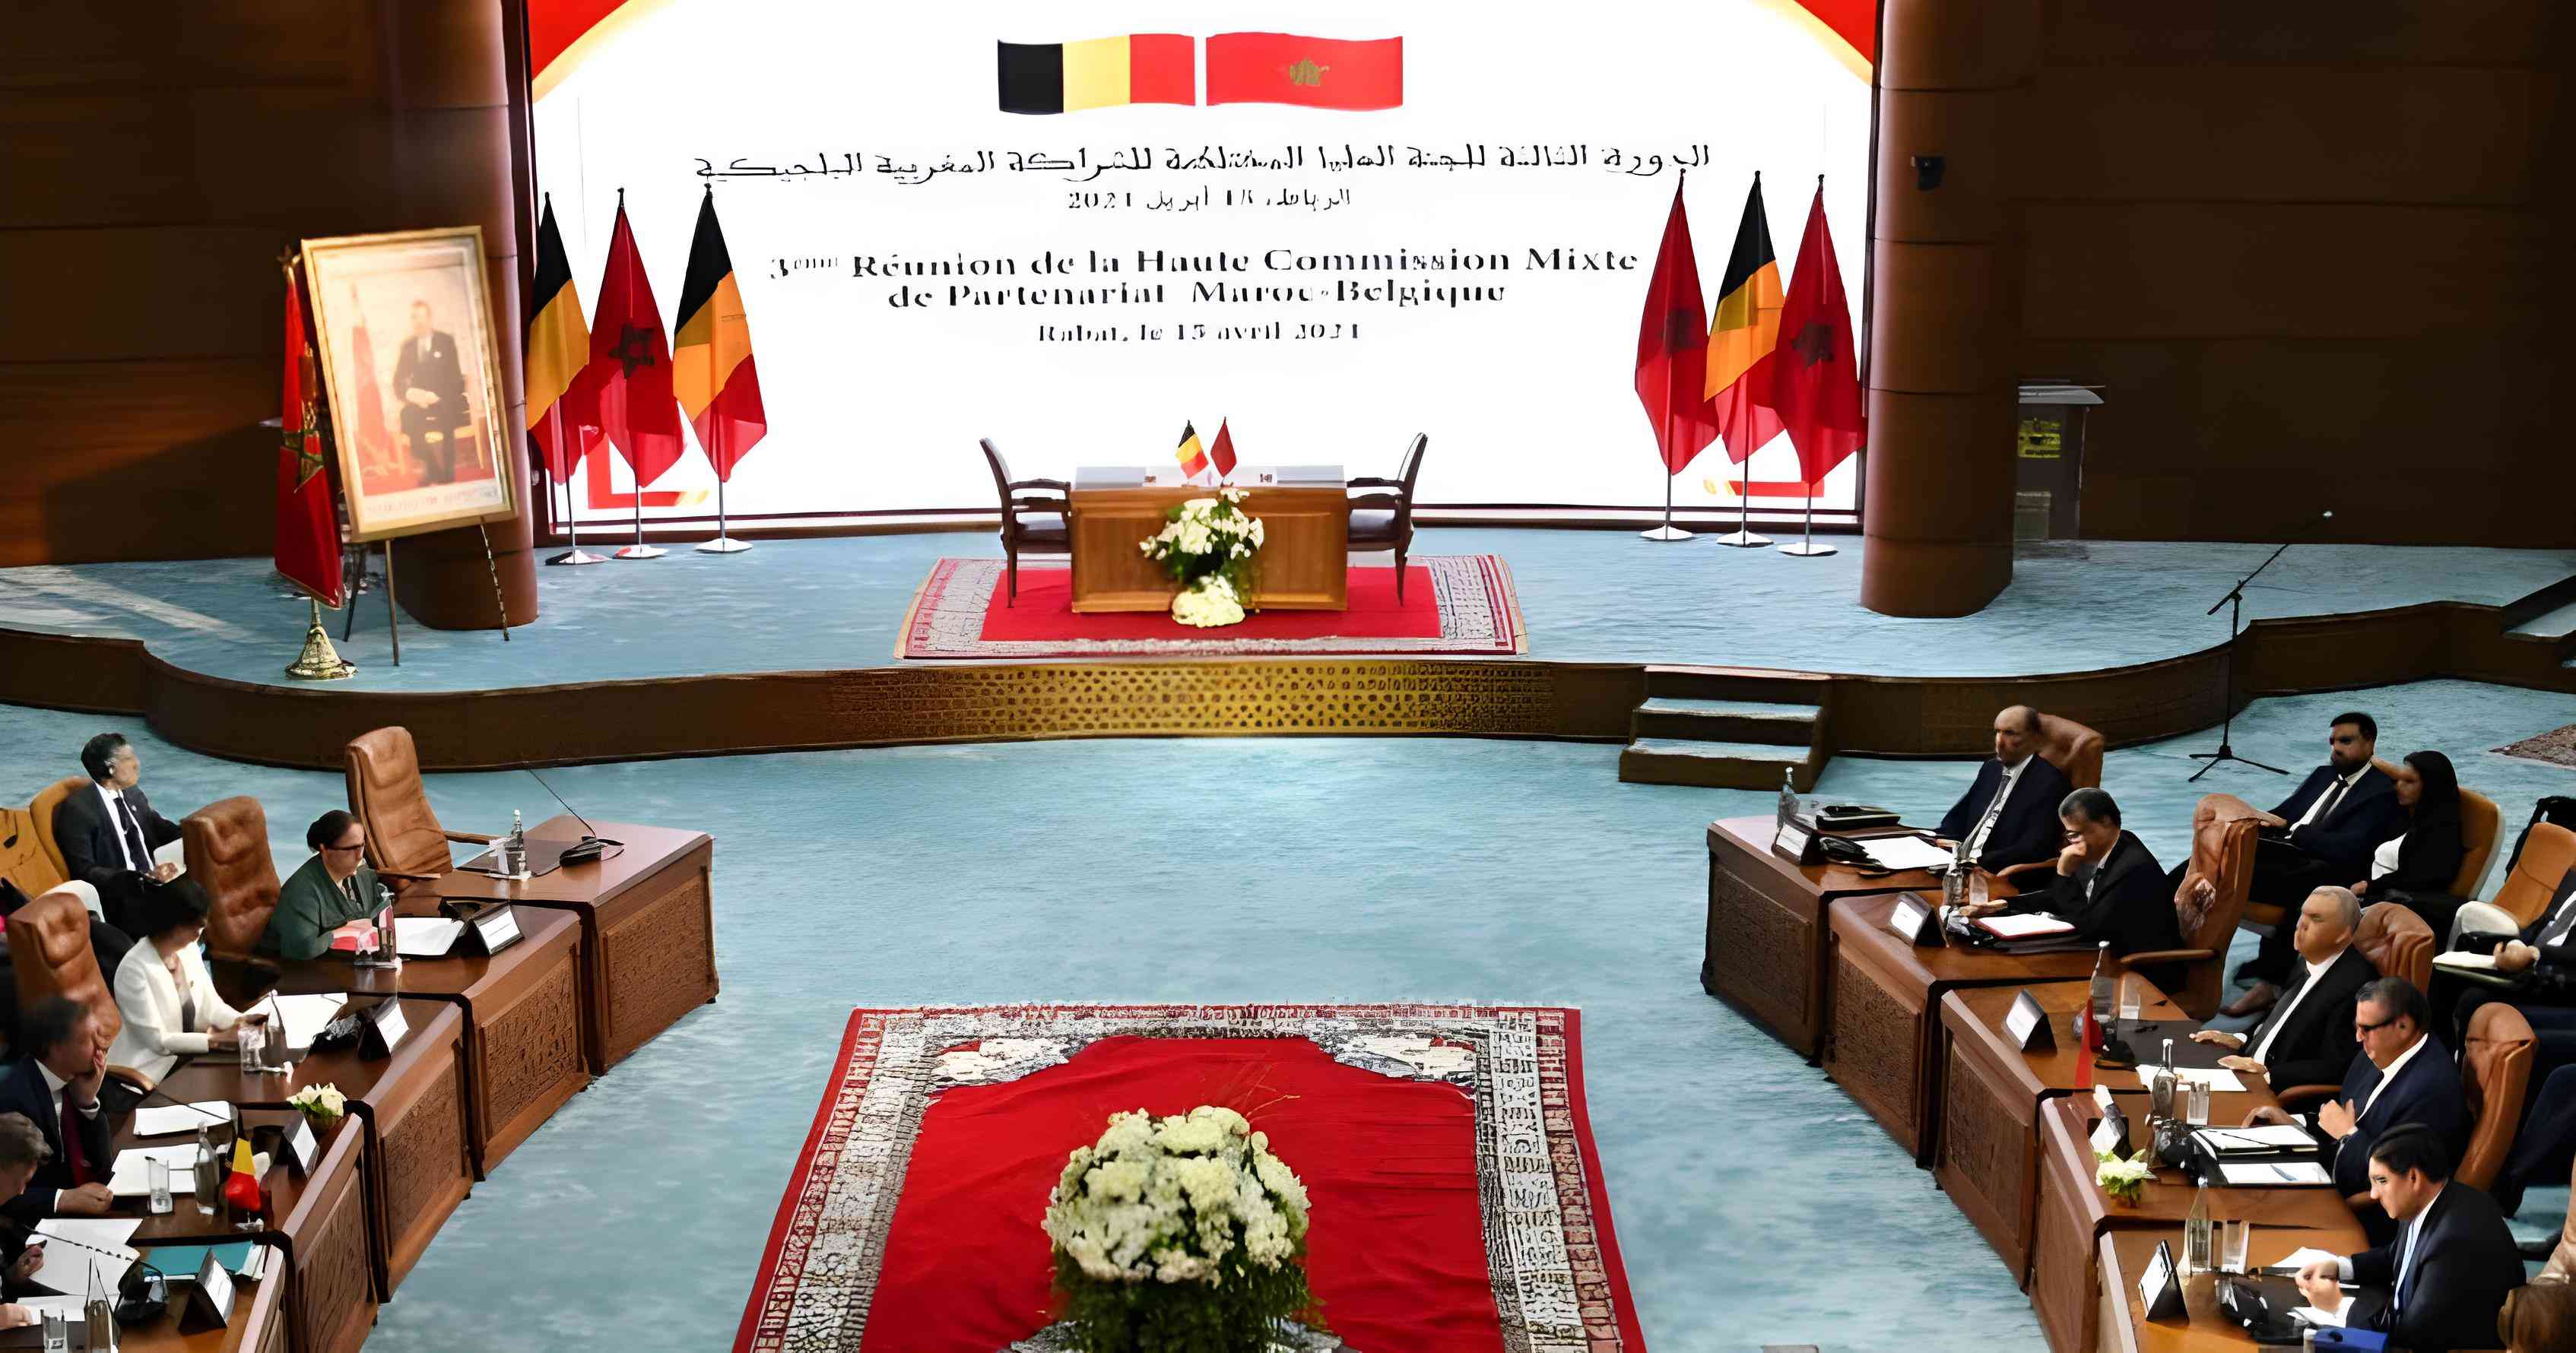 رسميا بلجيكا تعتبر مبادرة الحكم الذاتي للاقاليم الصحراوية أساسا جيدا  لحل مقبول من جميع الأطراف